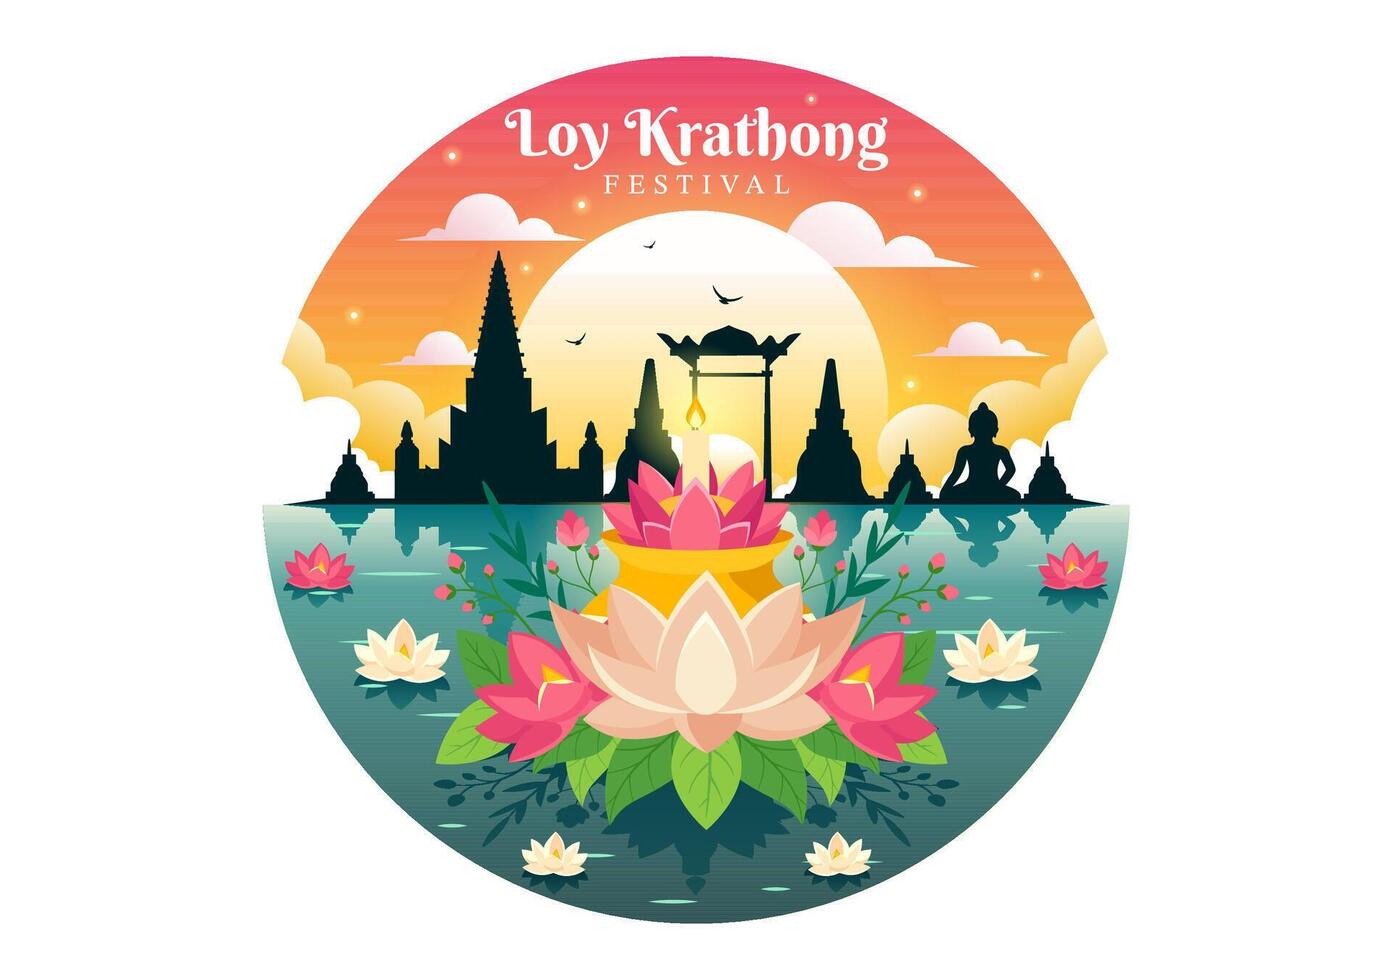 loy krathong vektor illustration av festival firande i thailand med lyktor och krathongs flytande på vatten design i platt tecknad serie bakgrund